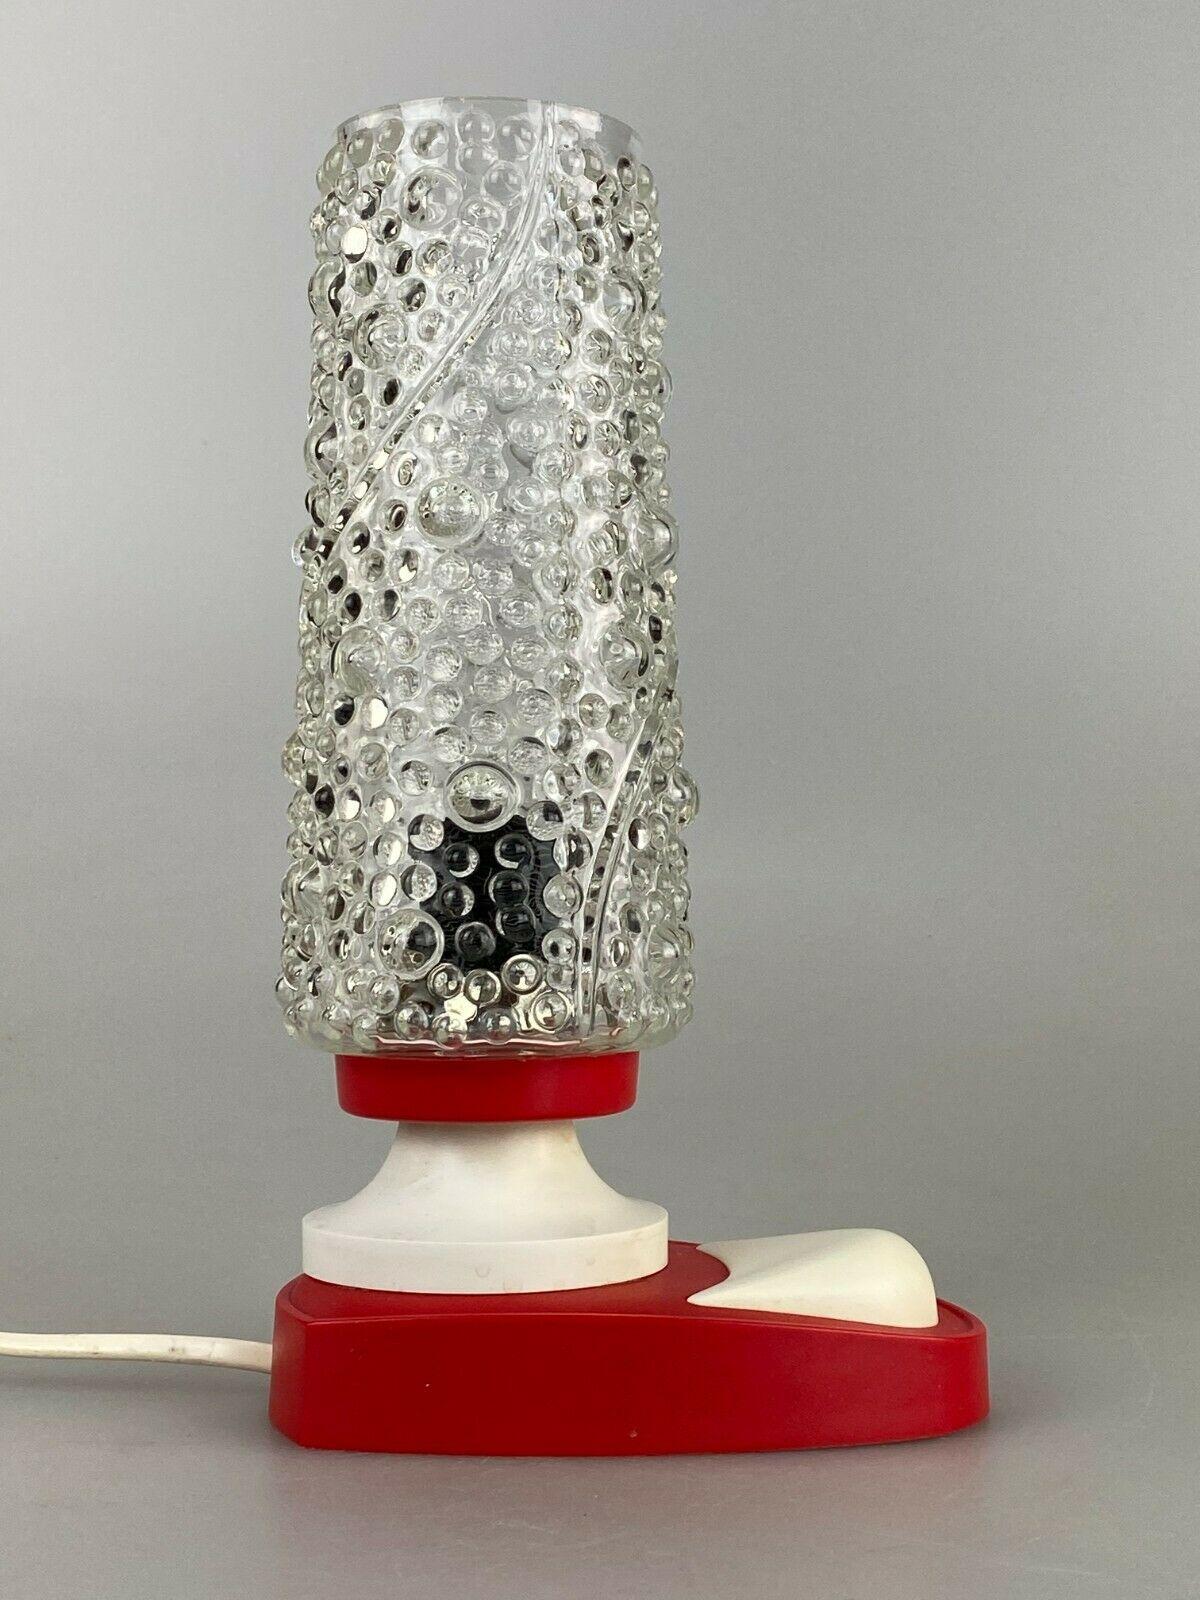 60er 70er Jahre Lampe Bubble light Tischlampe Nachttischlampe Space Age Design

Objekt: Tischlampe

Hersteller: Fischer Leuchten

Zustand: gut

Alter: etwa 1960-1970

Abmessungen:

13.5cm x 9cm x 23,5cm

Sonstige Anmerkungen:

Die